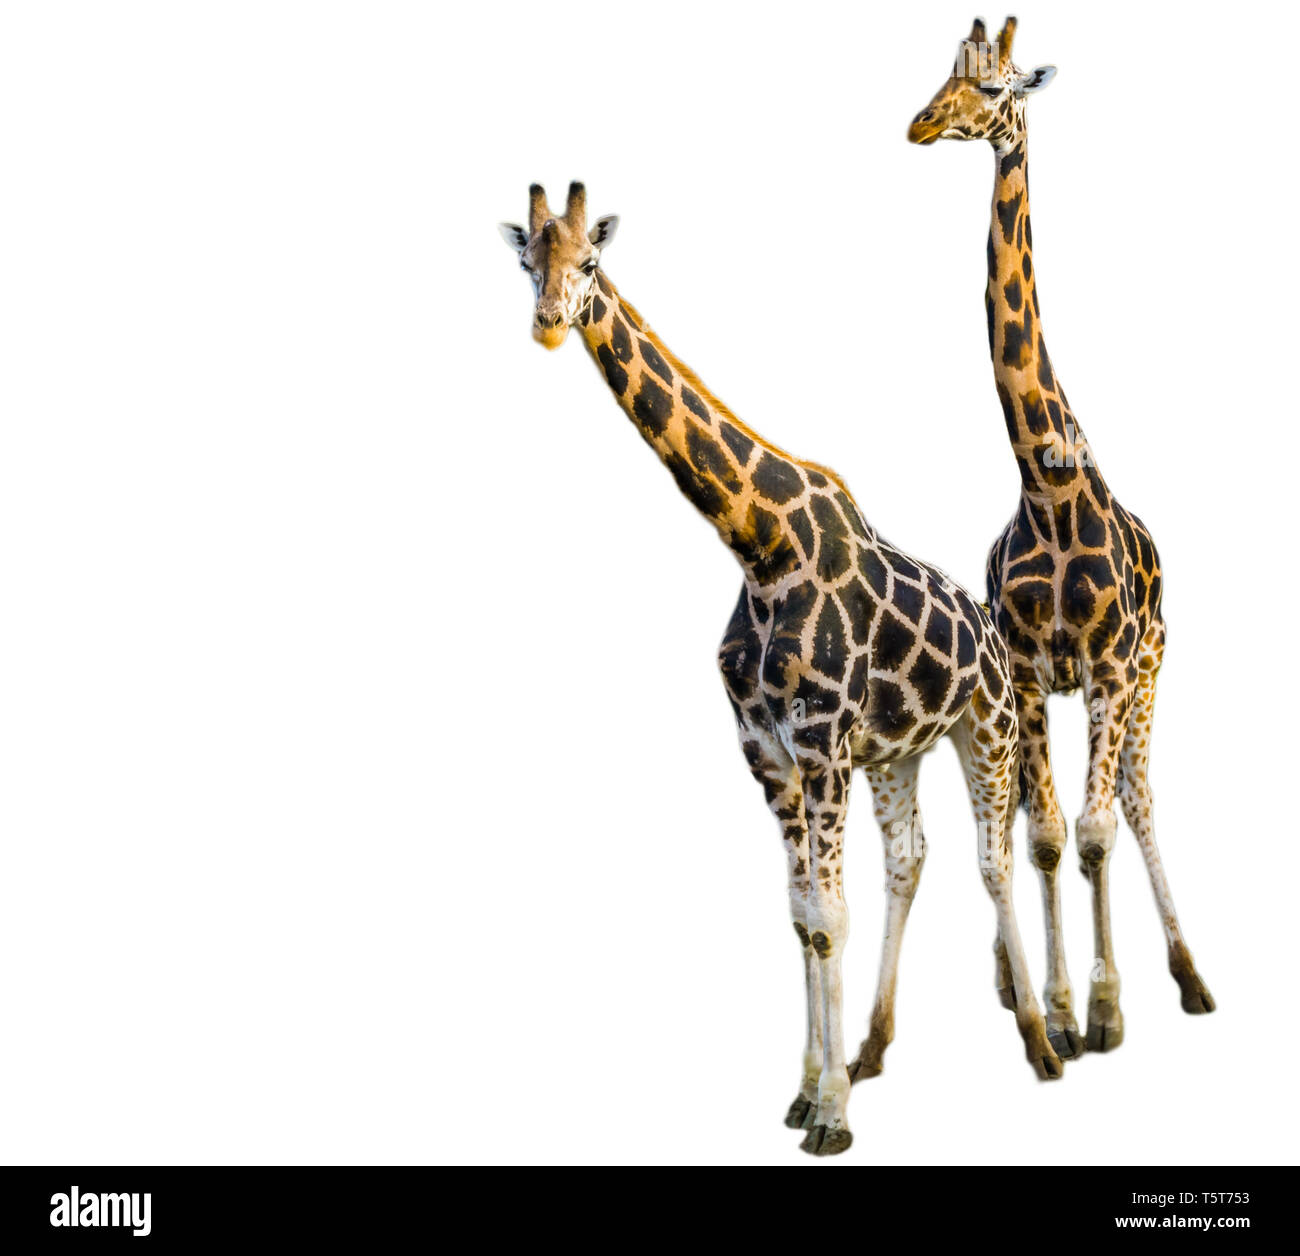 Maschio e femmina insieme a giraffa isolato su uno sfondo bianco, popolare zoo degli animali in via di estinzione specie animale dall'africa Foto Stock